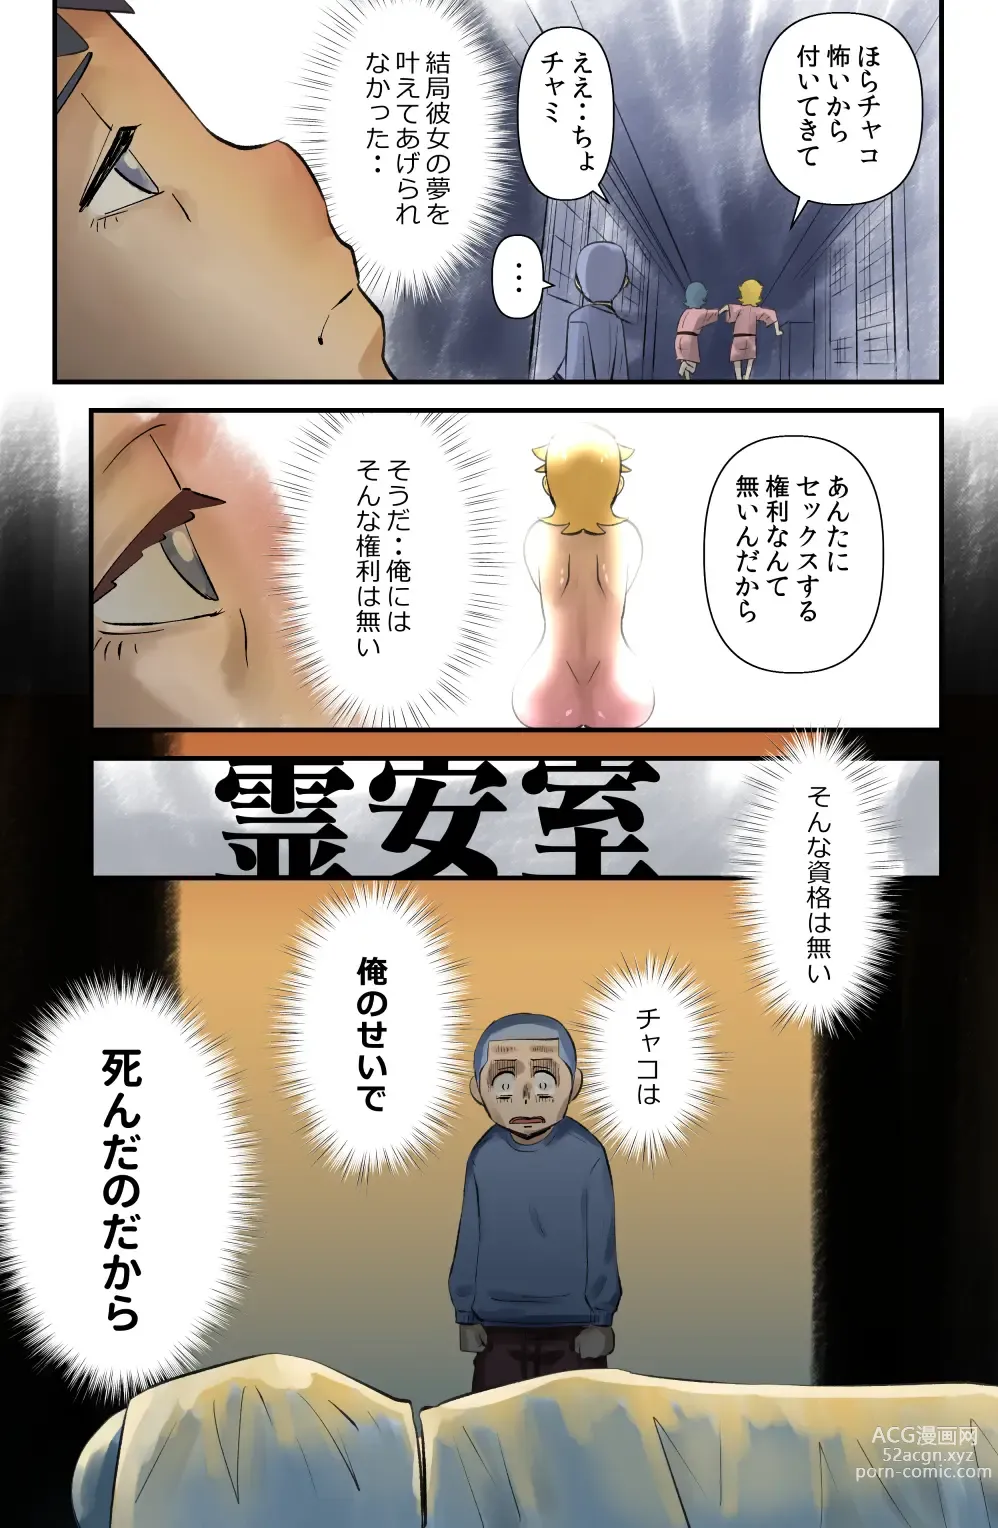 Page 11 of doujinshi Chako-chan to Ken-chan